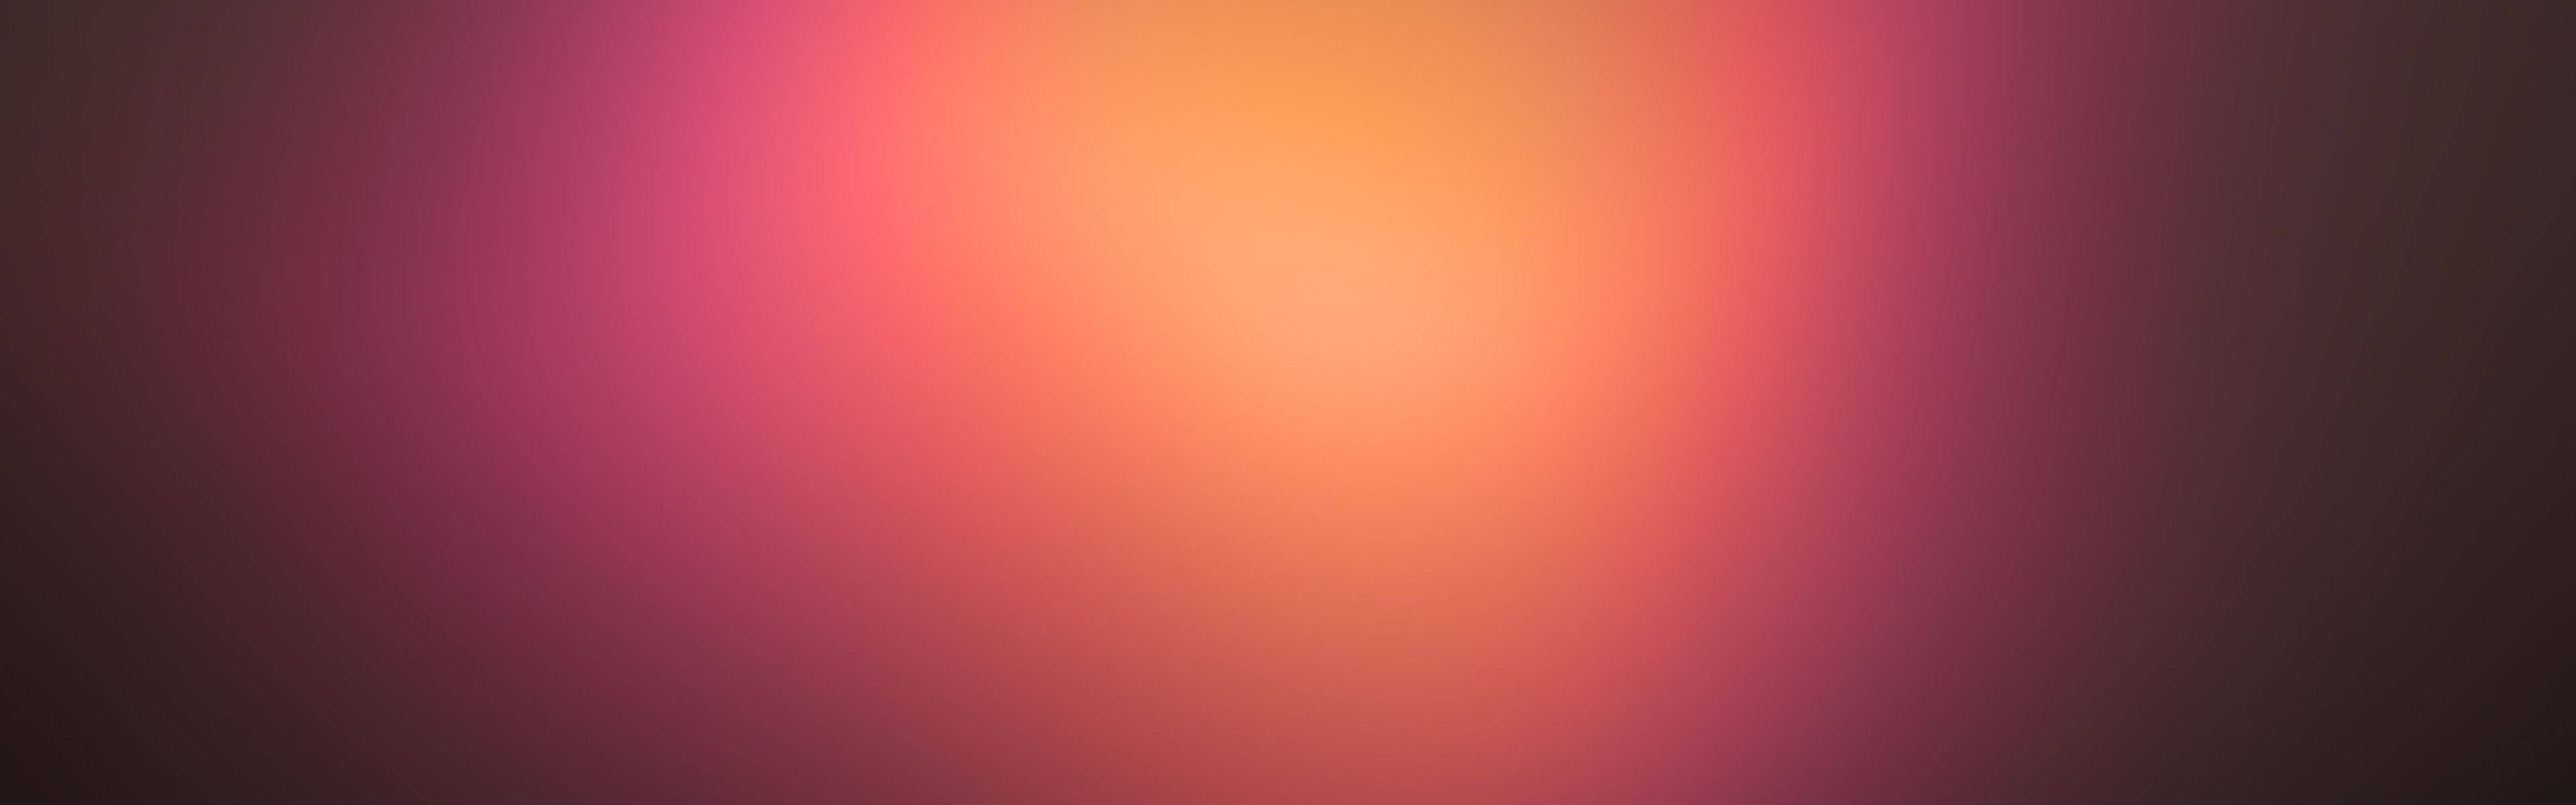 Pink Blur Wide Background Wallpaper